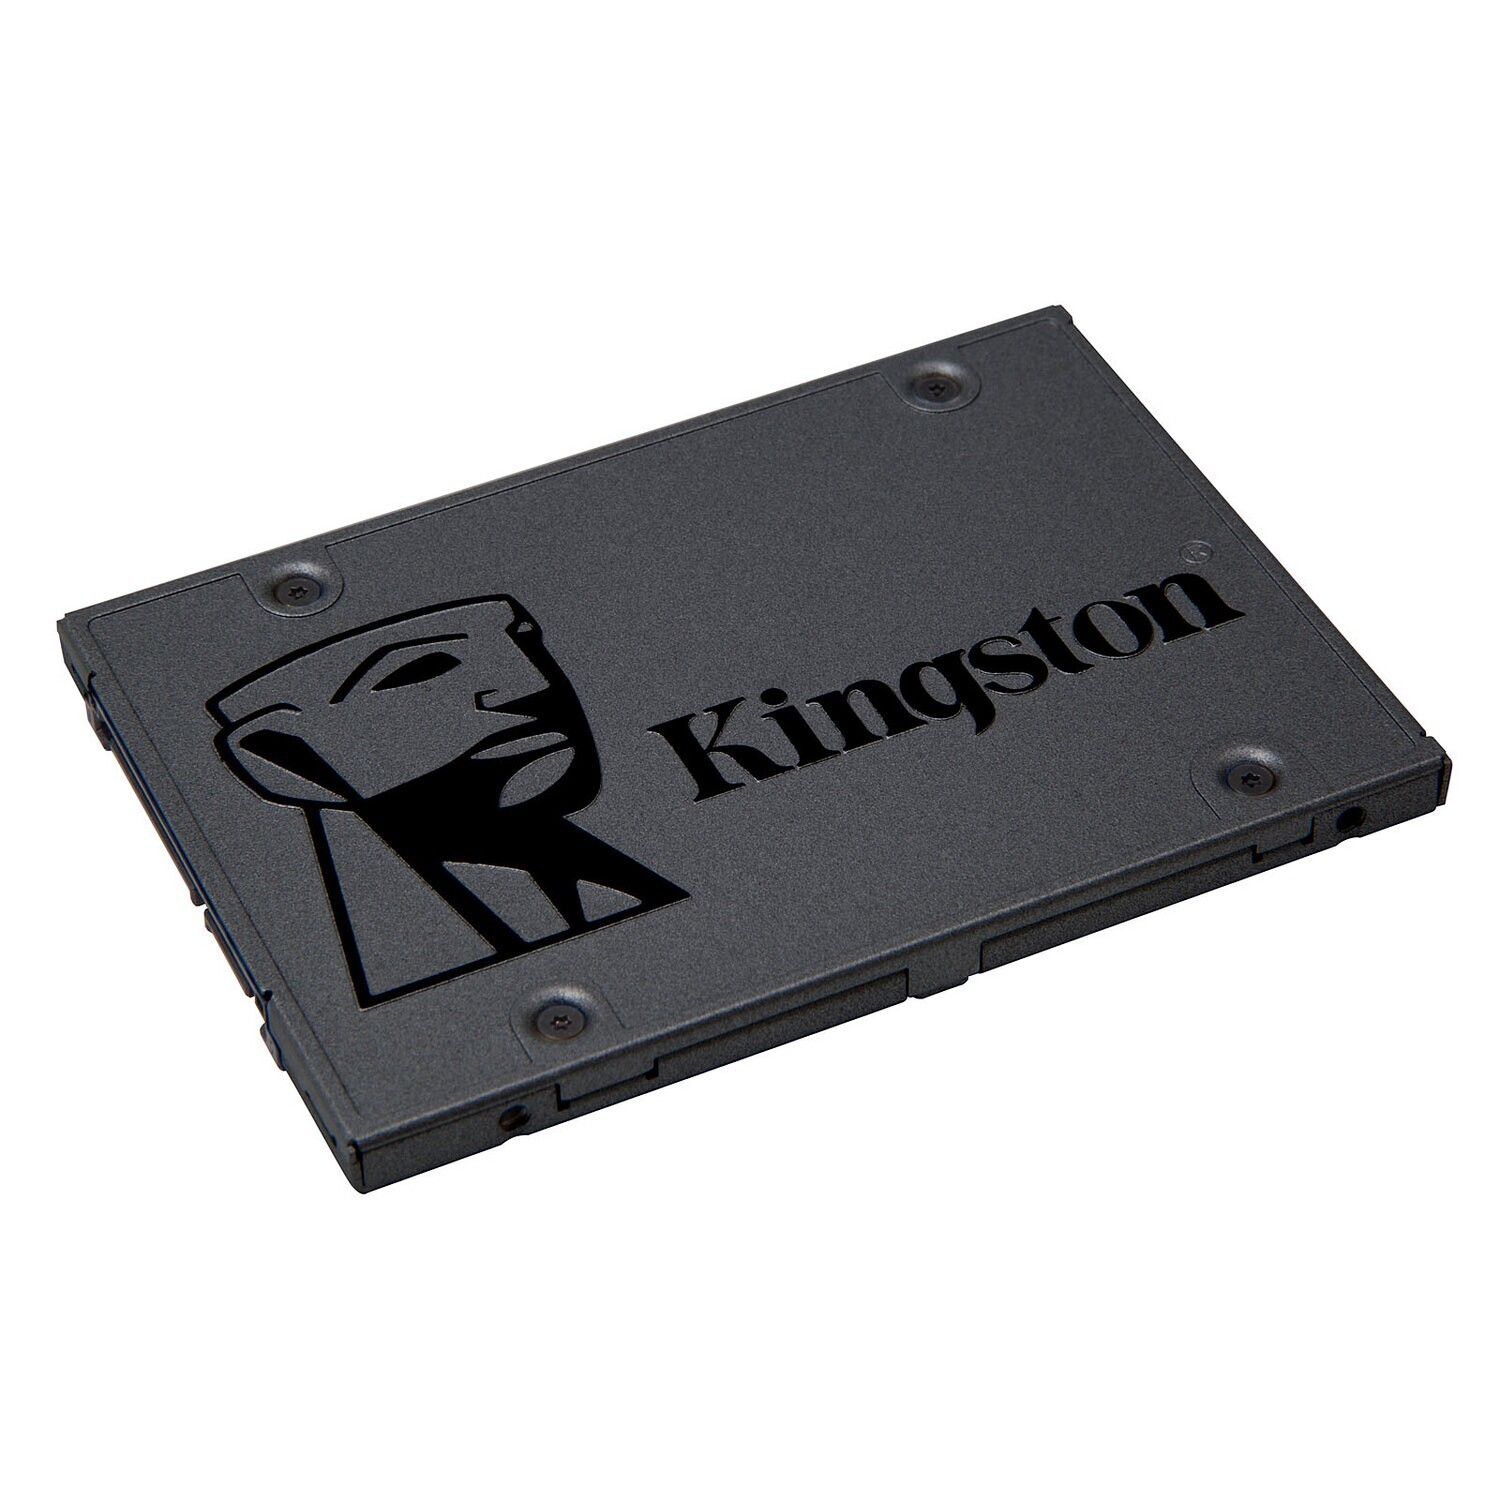 KINGSTON A400 240GB SSD, M.2 2280, SATA 6 Gb/s, Read/Write: 500 / 350 MB/s